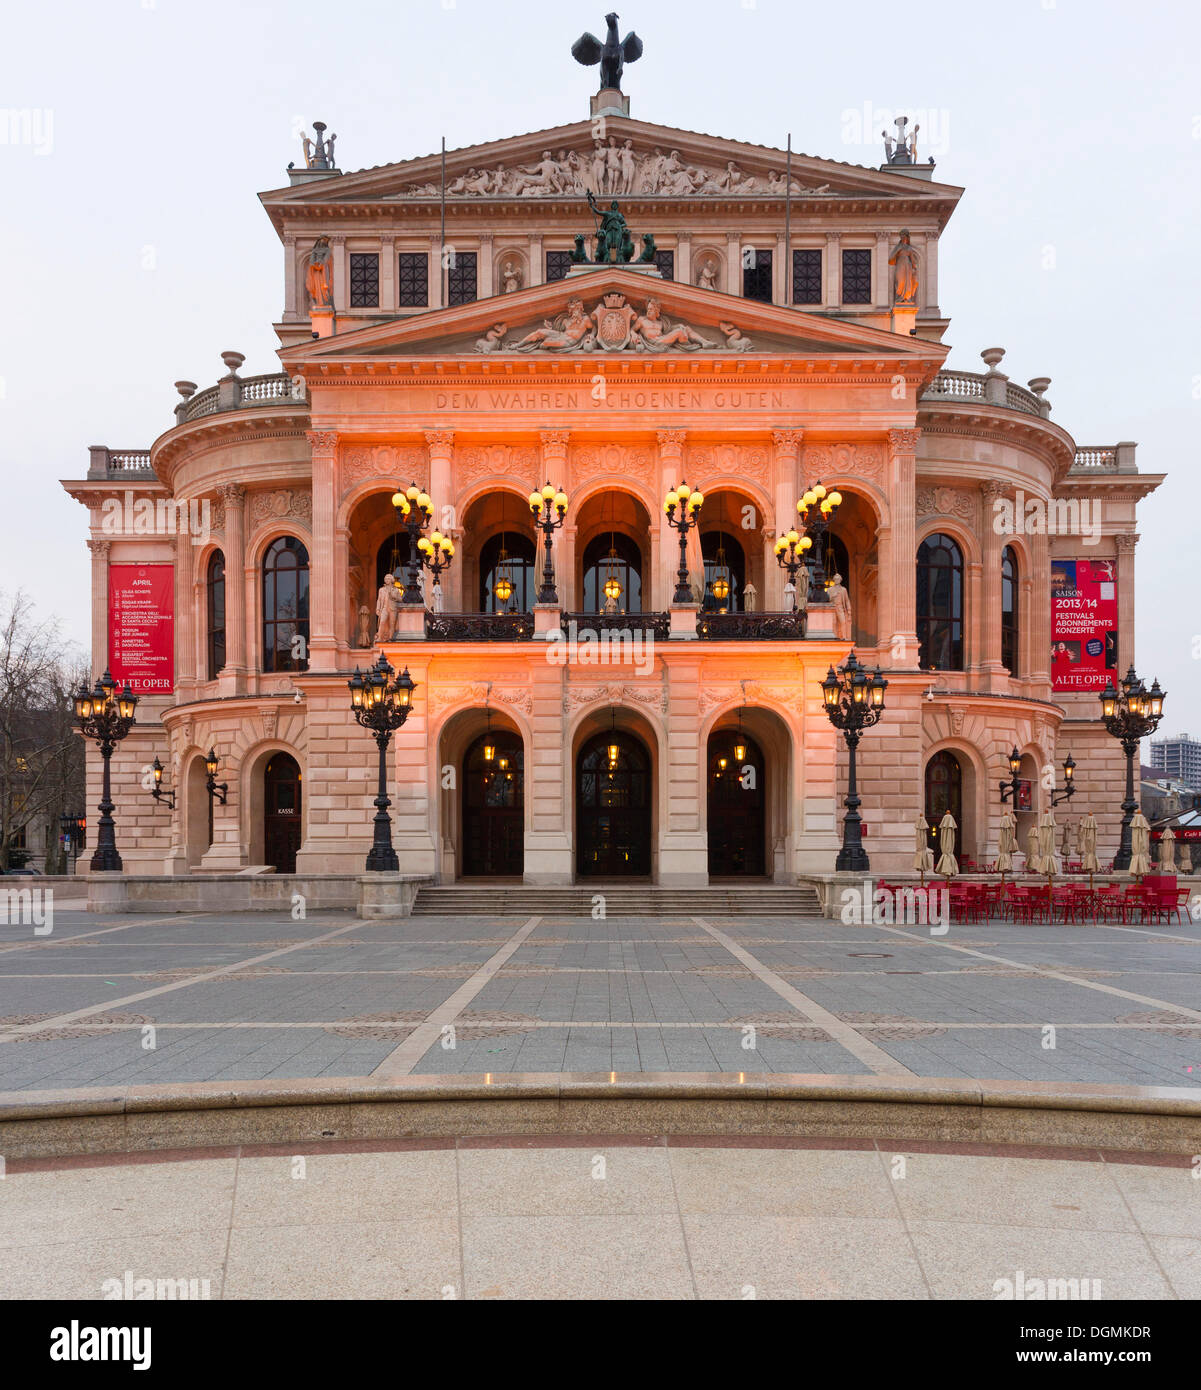 Bâtiment classique, l'Alte Oper, l'ancien opéra, conçu par Richard Lucae, aujourd'hui une salle de concert, Frankfurt am Main, Hesse Banque D'Images